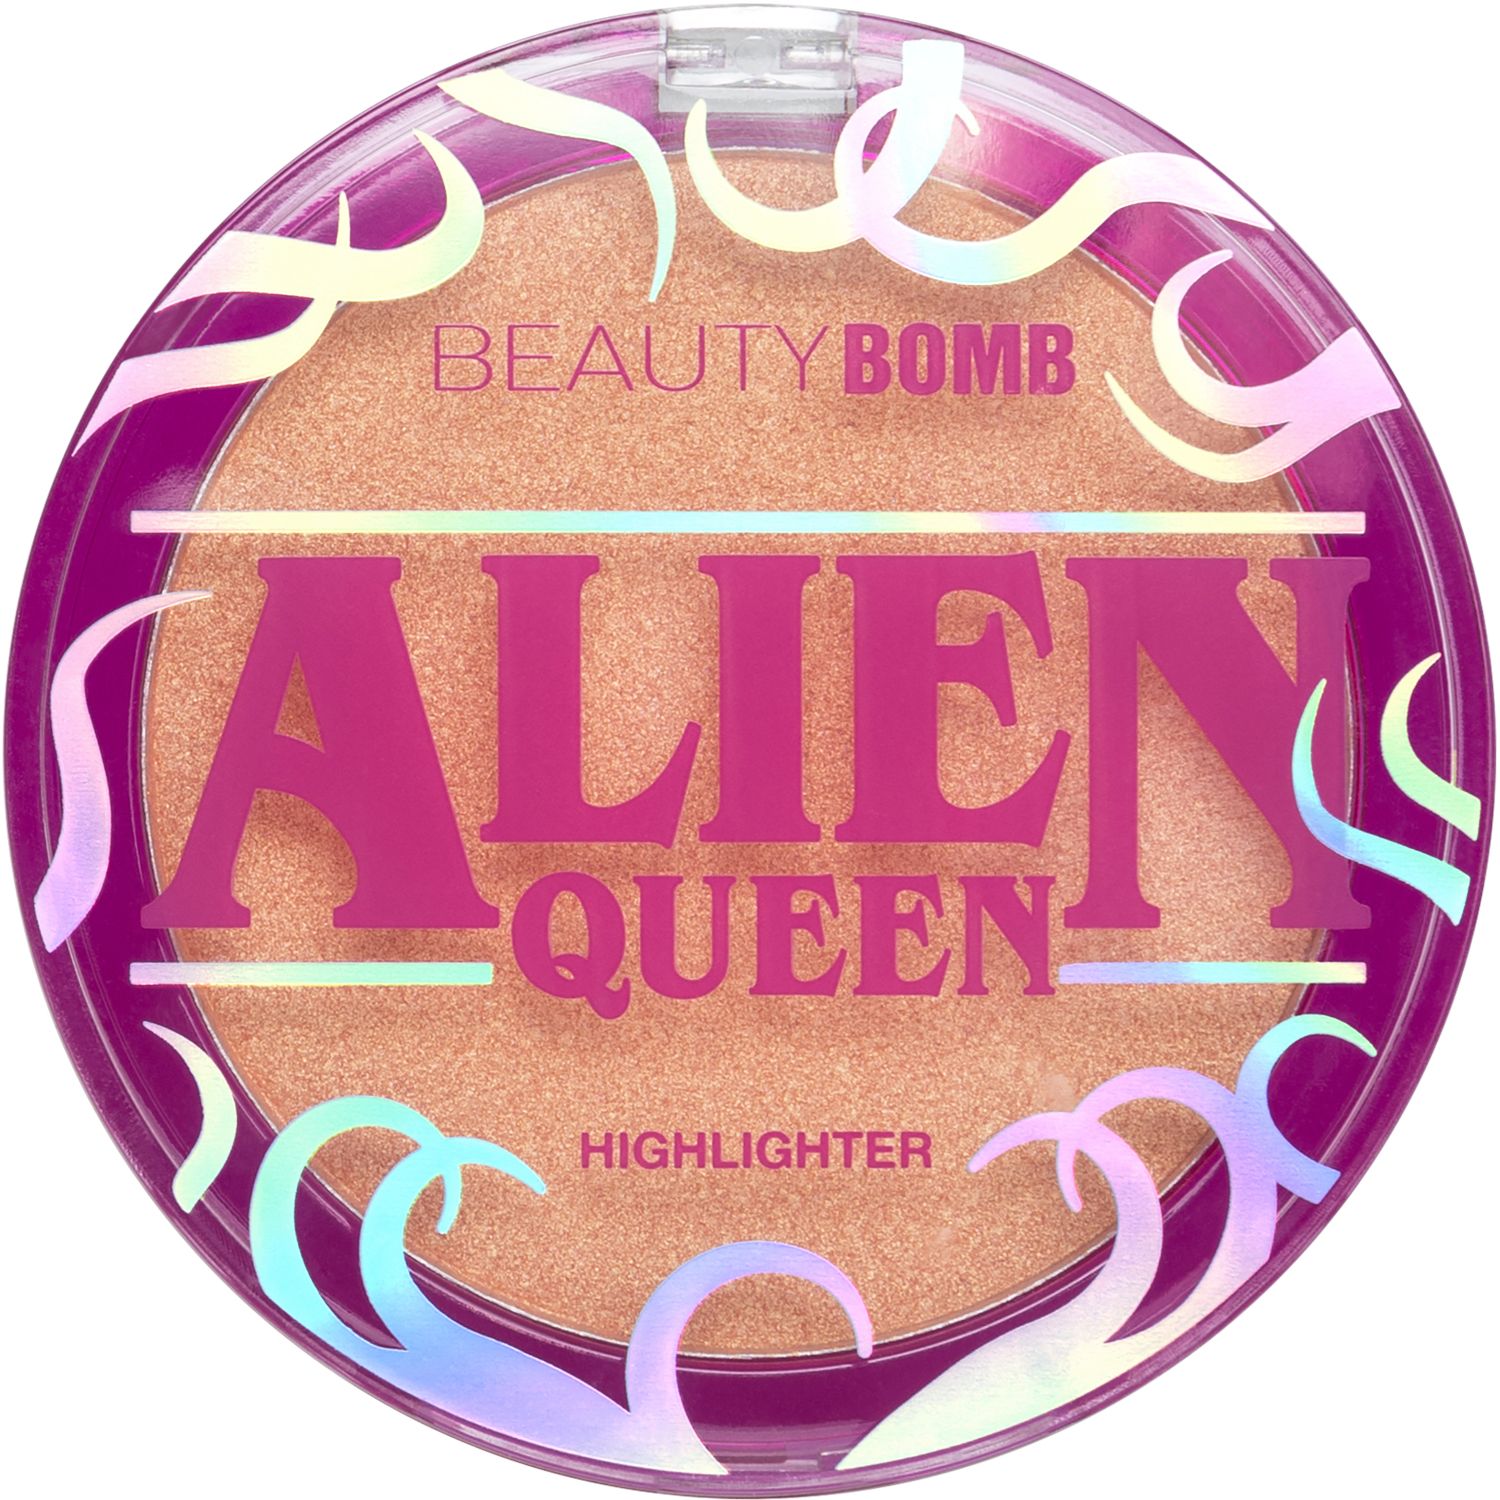 Хайлайтер Beauty Bomb Alien Queen  с золотистым сиянием, персиковый, №01, 6 г поводок для собак хвостатыч с золотистым карабином разно ный нейлон 7 м х 20 мм